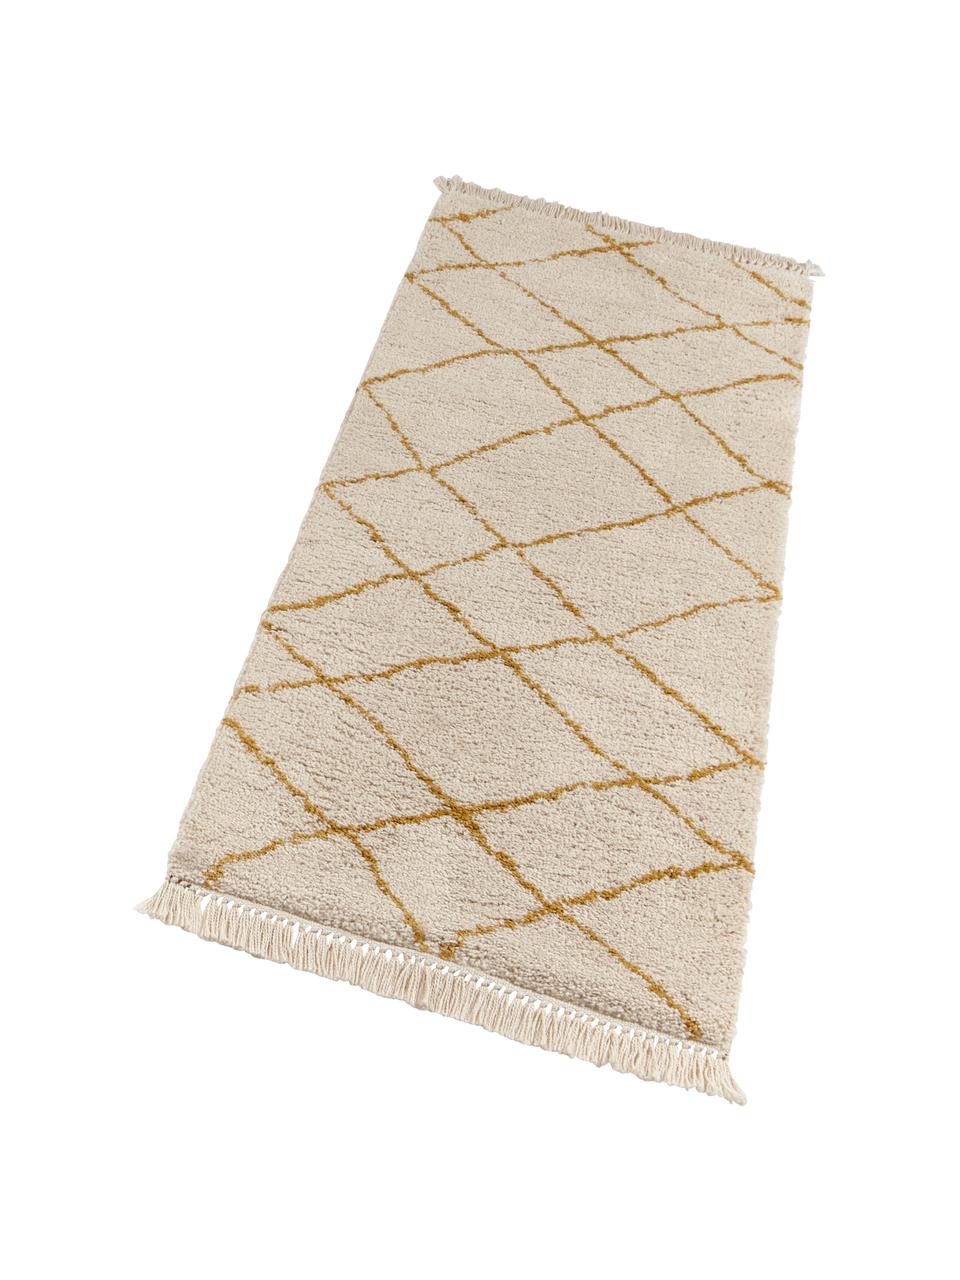 Puszysty dywan z długim włosiem Primrose, Kremowy, żółtozłoty, S 120 x D 170 cm